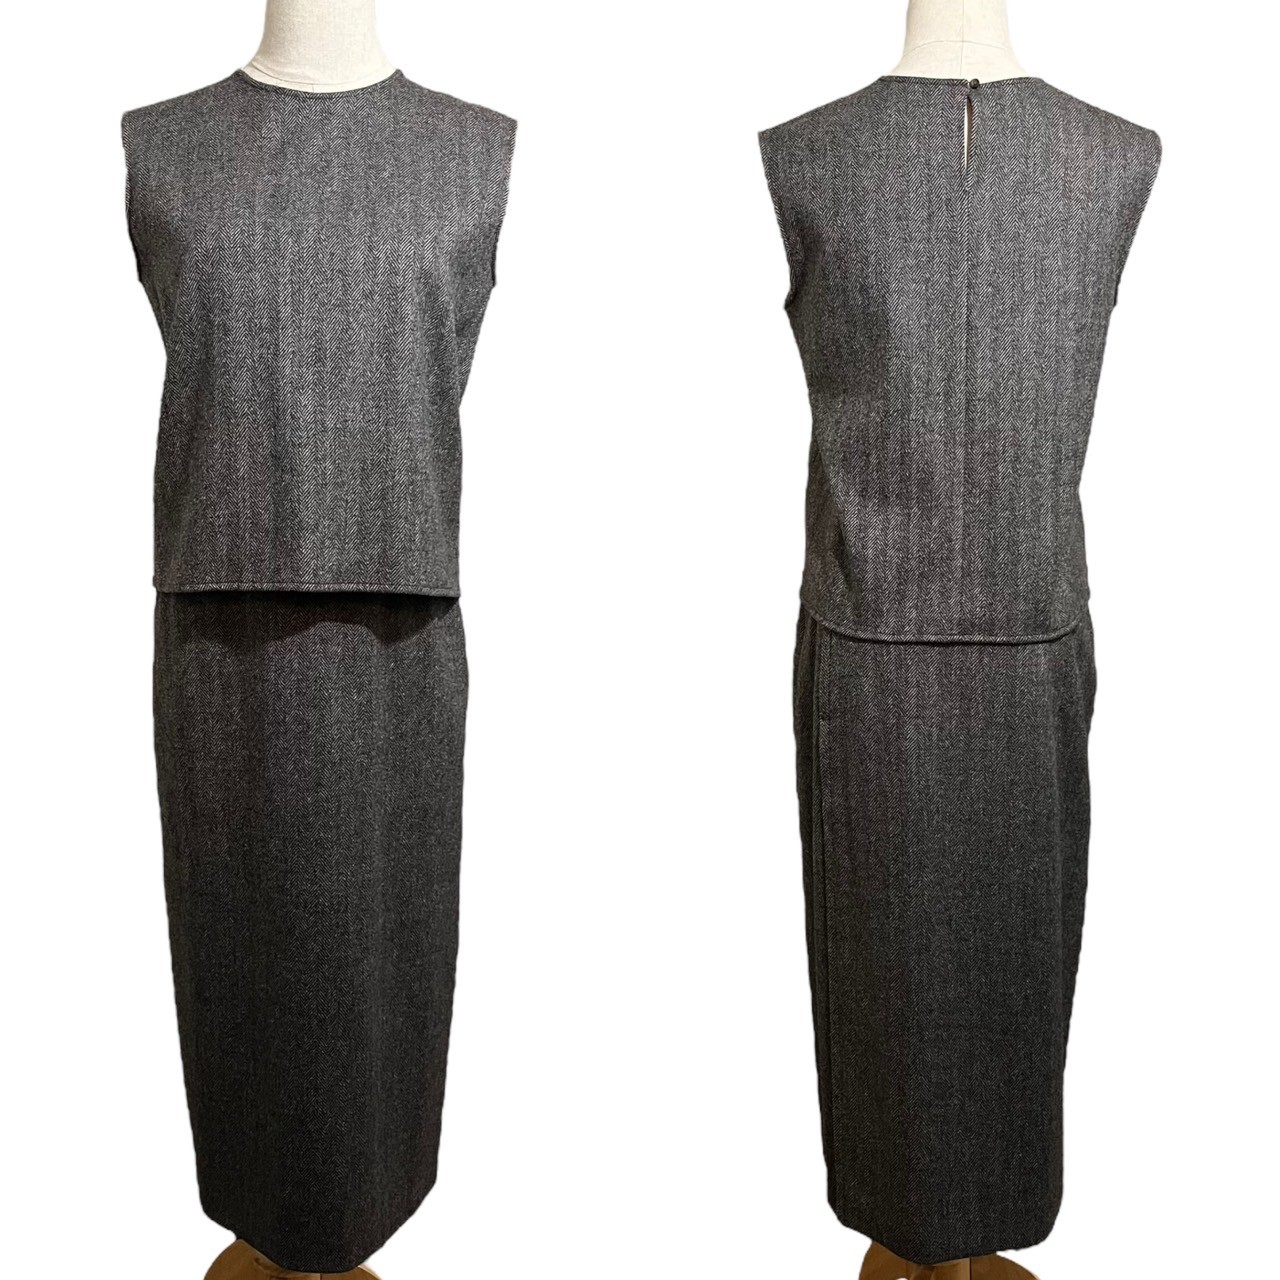 HERMES( Hermes ) твид палантин жакет выставить Margiela период Brown безрукавка блуза тугой длинная юбка выполненный в строгом стиле no color 